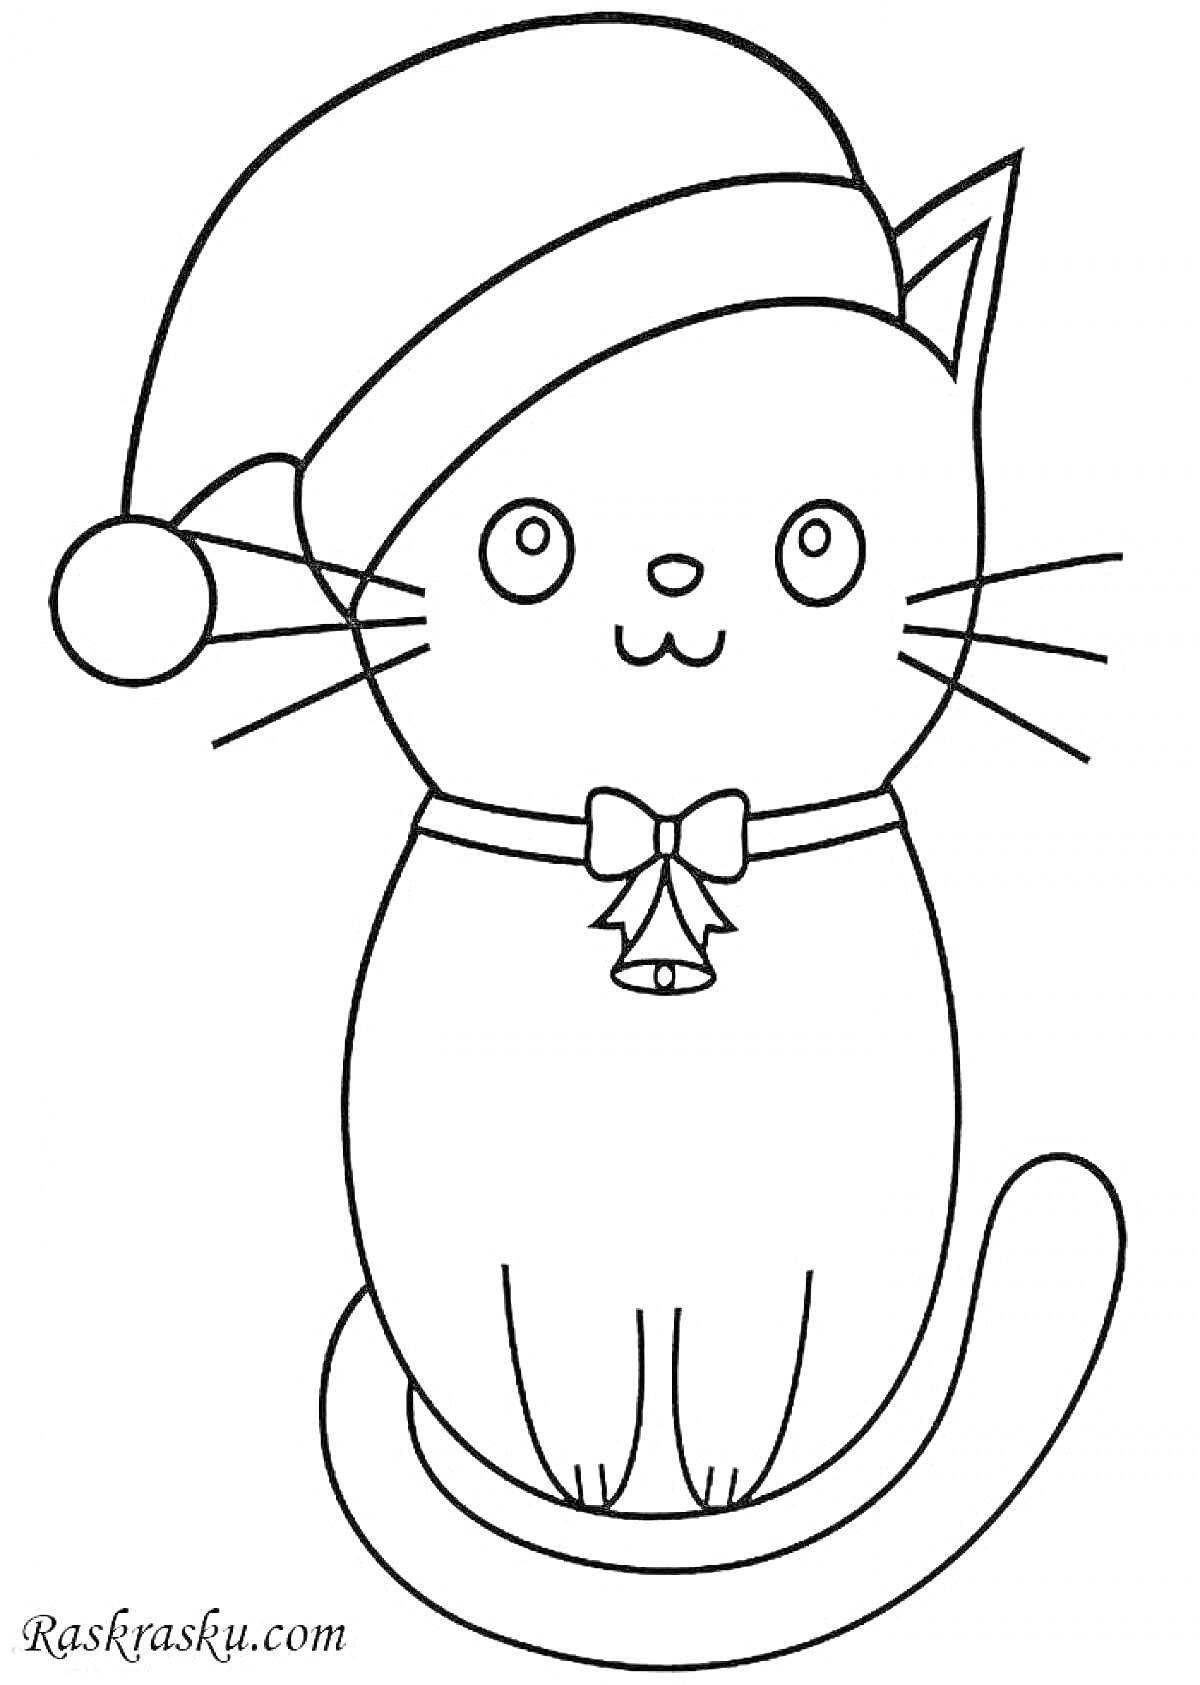 Раскраска Кот с новогодней шапкой, бантом и колокольчиком